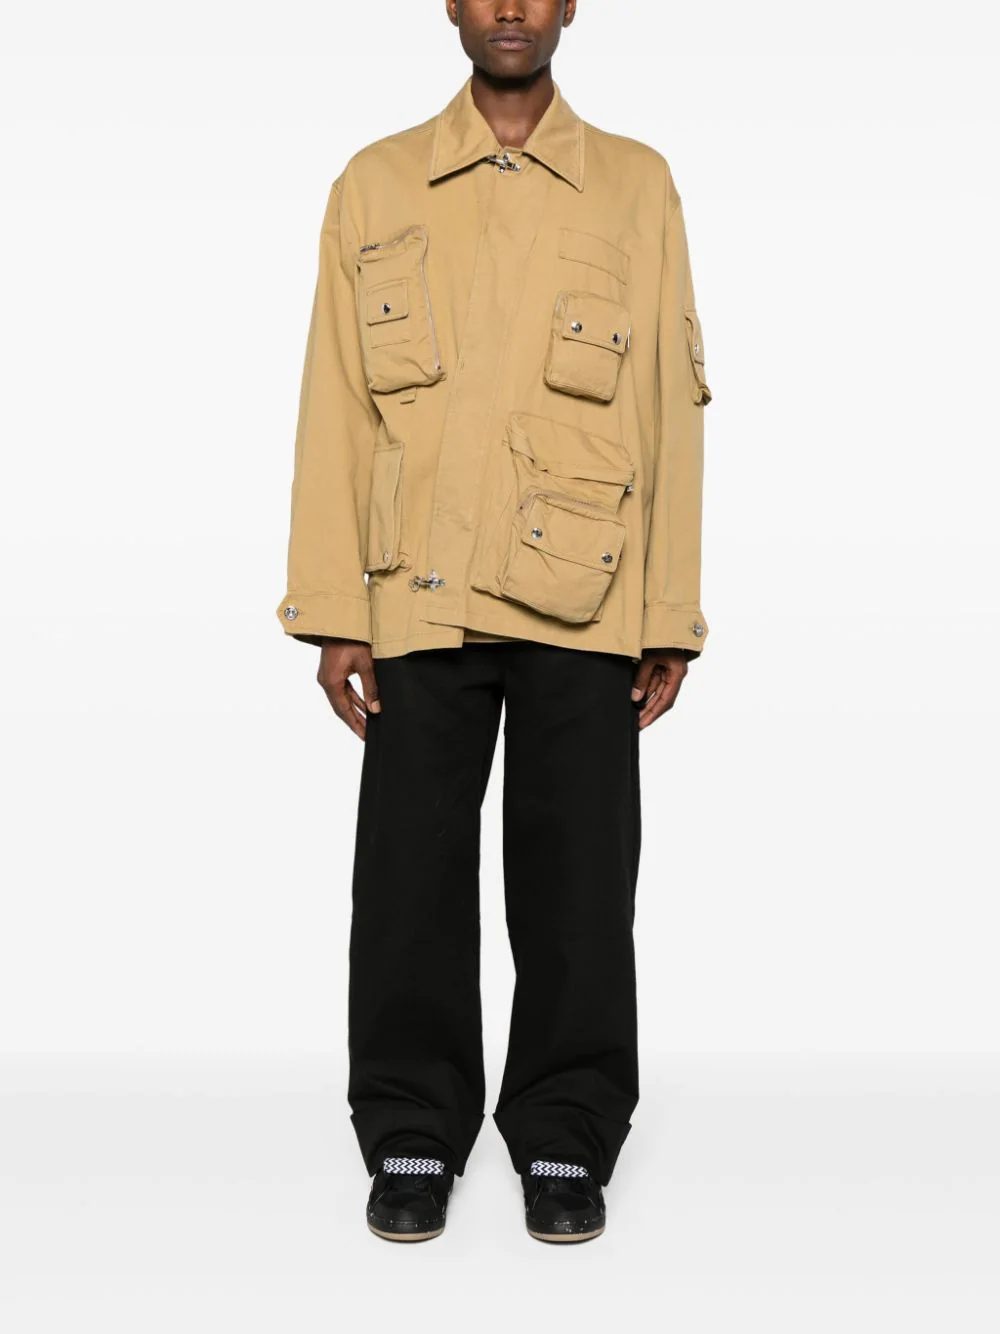 Находки недели: шерстяной джемпер Loewe, куртка Fendi с 3D-принтом и джинсовые шорты